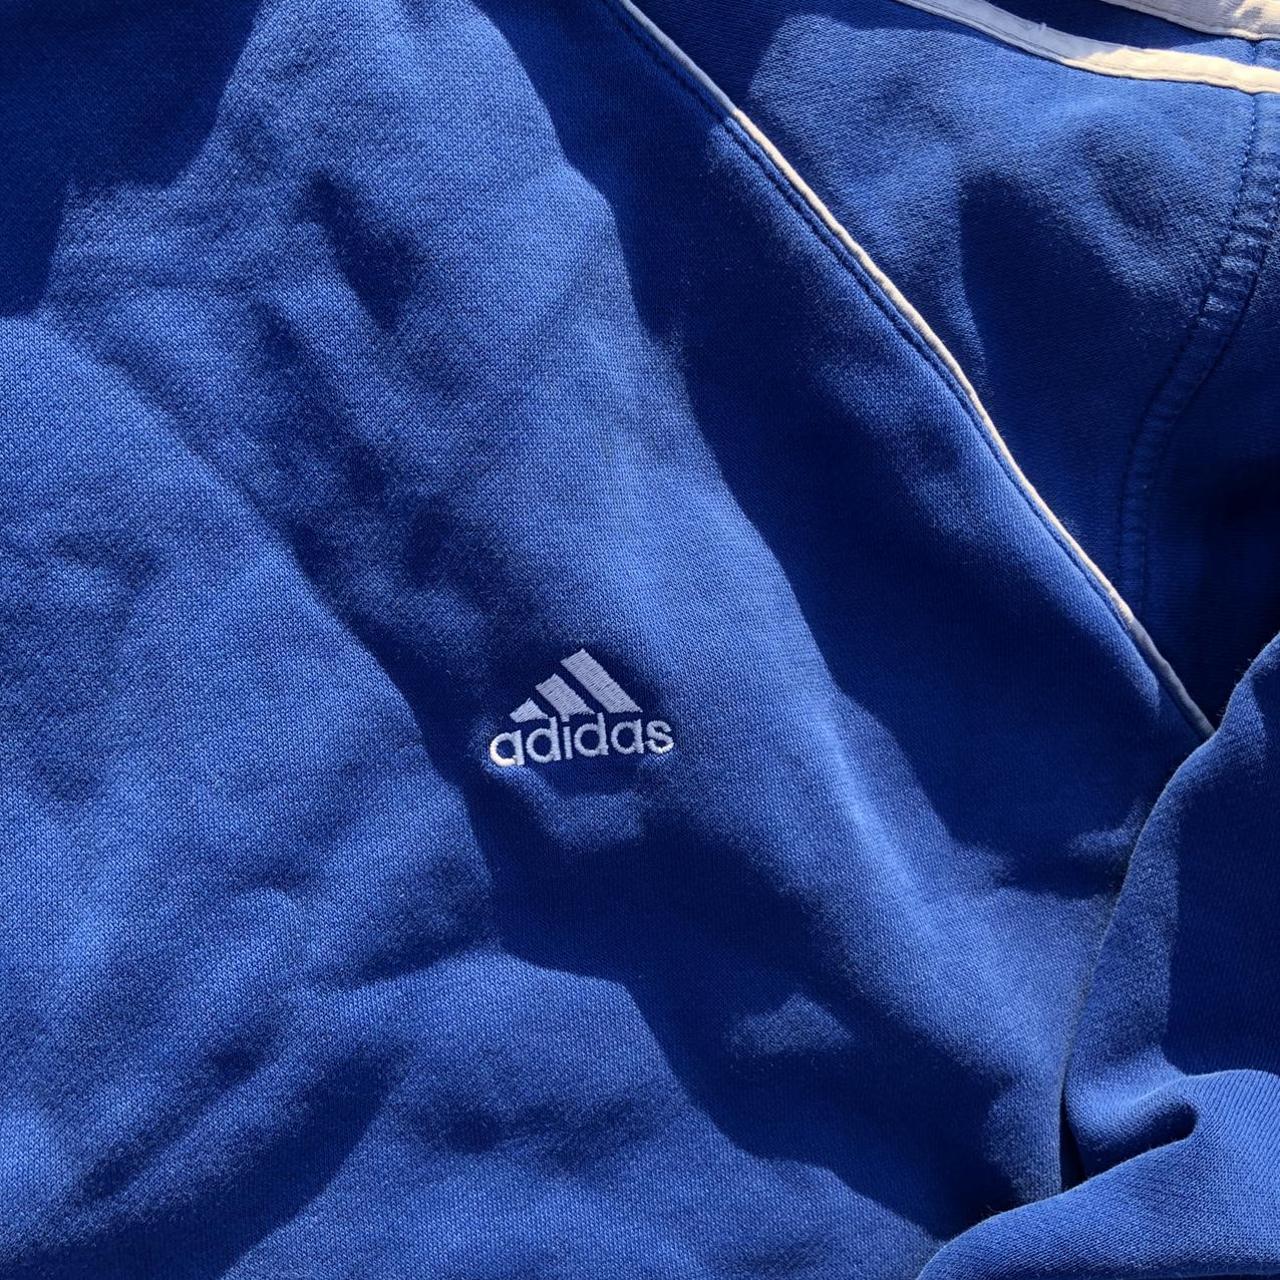 Adidas Blue Hoodie in amazing... - Depop